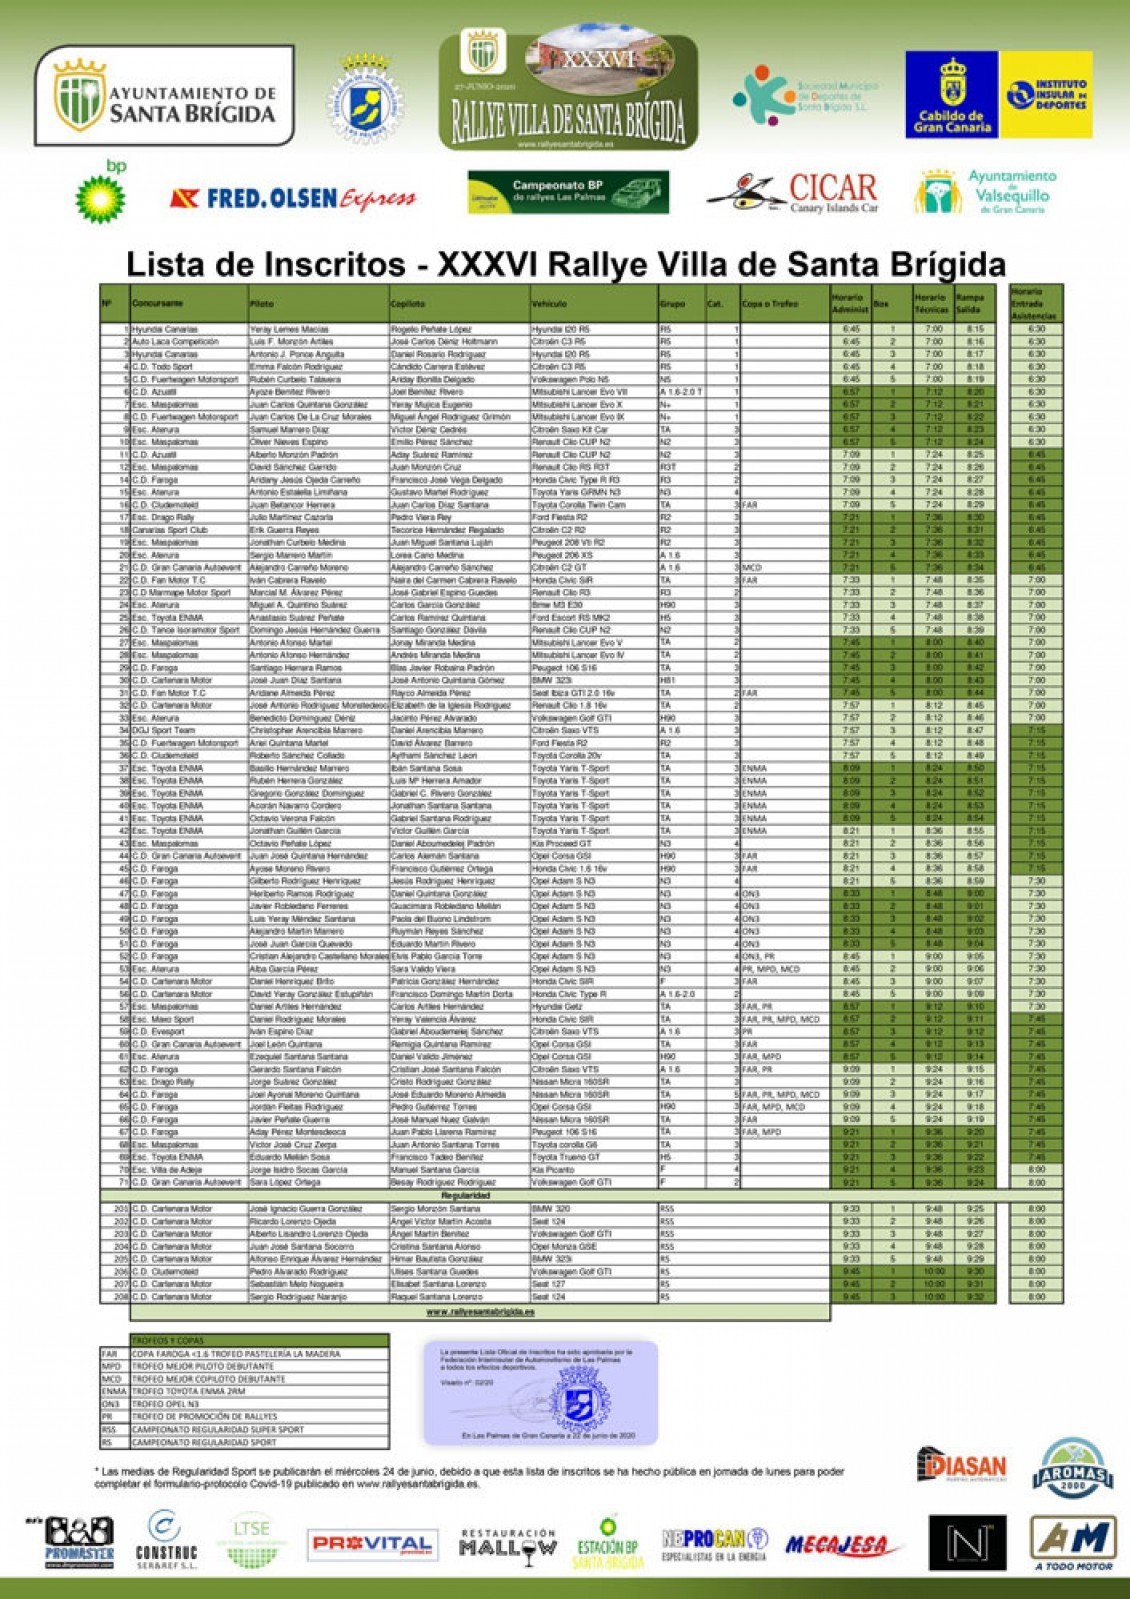 Lista de inscritos de lujo para el Rally Santa Brígida